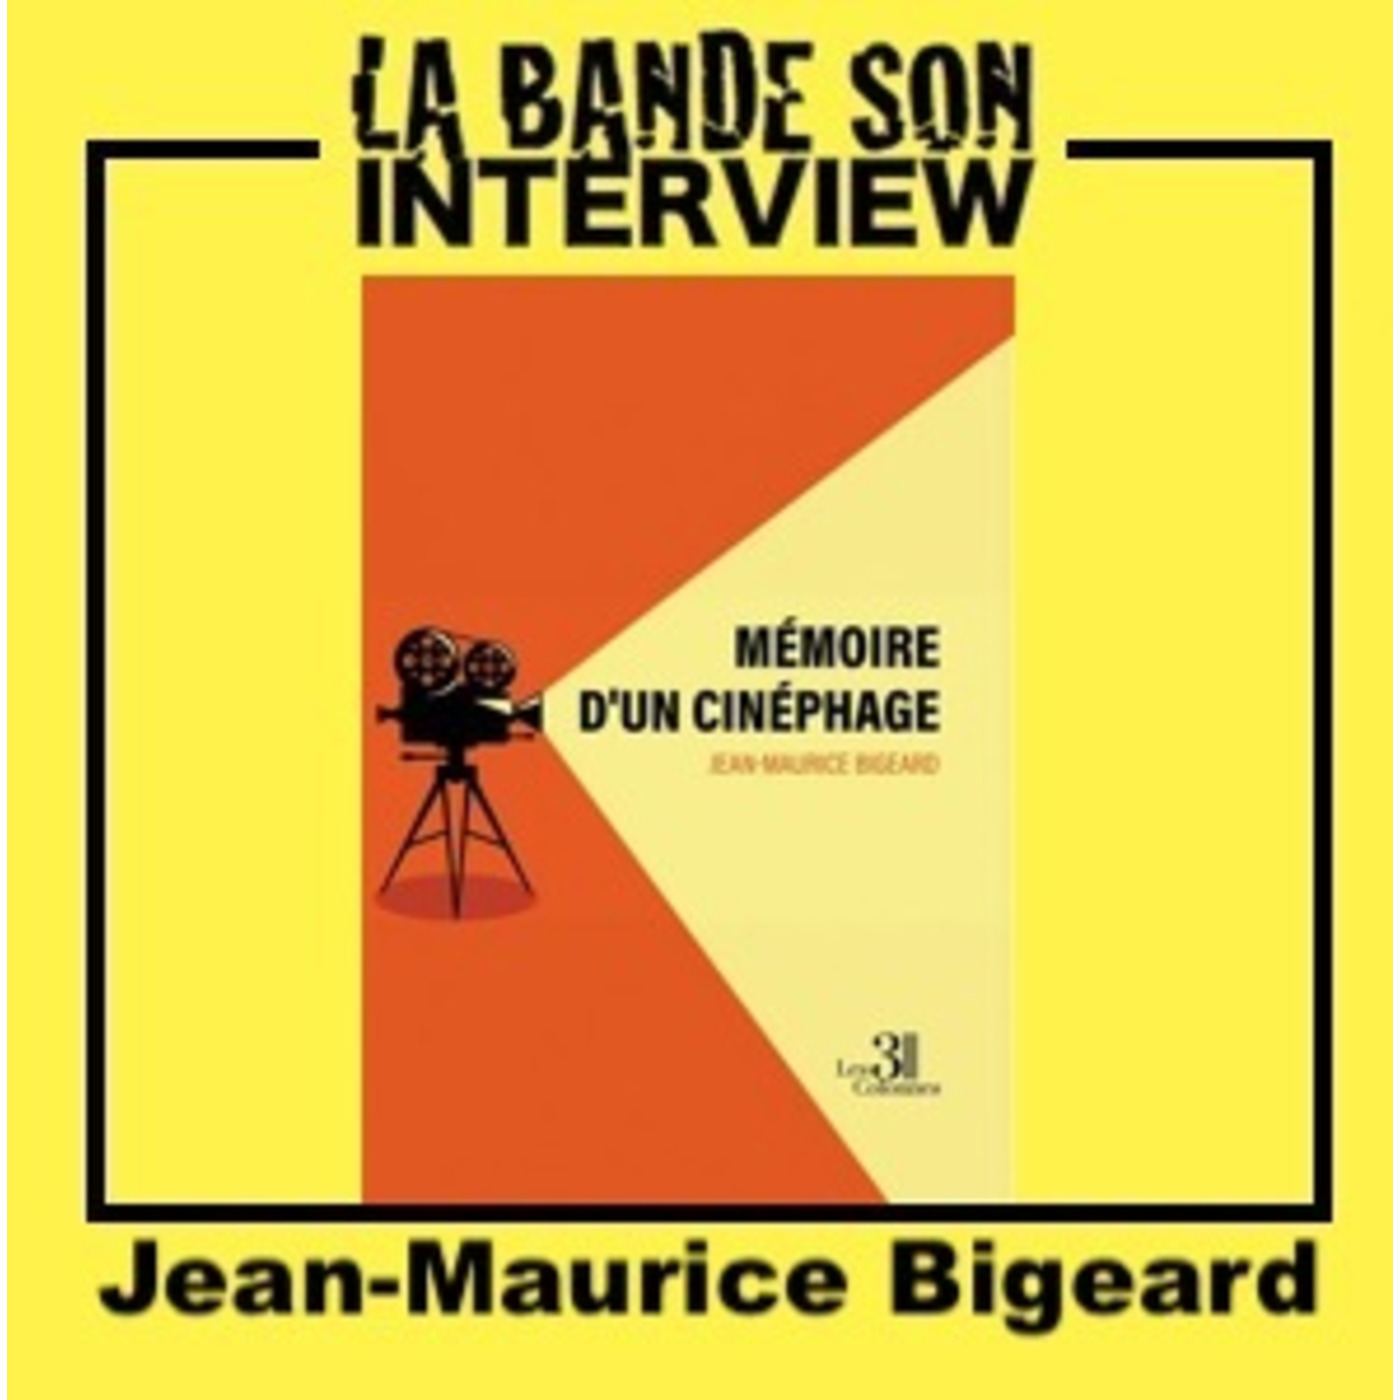 La Bande Son interview - "Mémoire d'un cinéphage", Jean-Maurice Bigeard